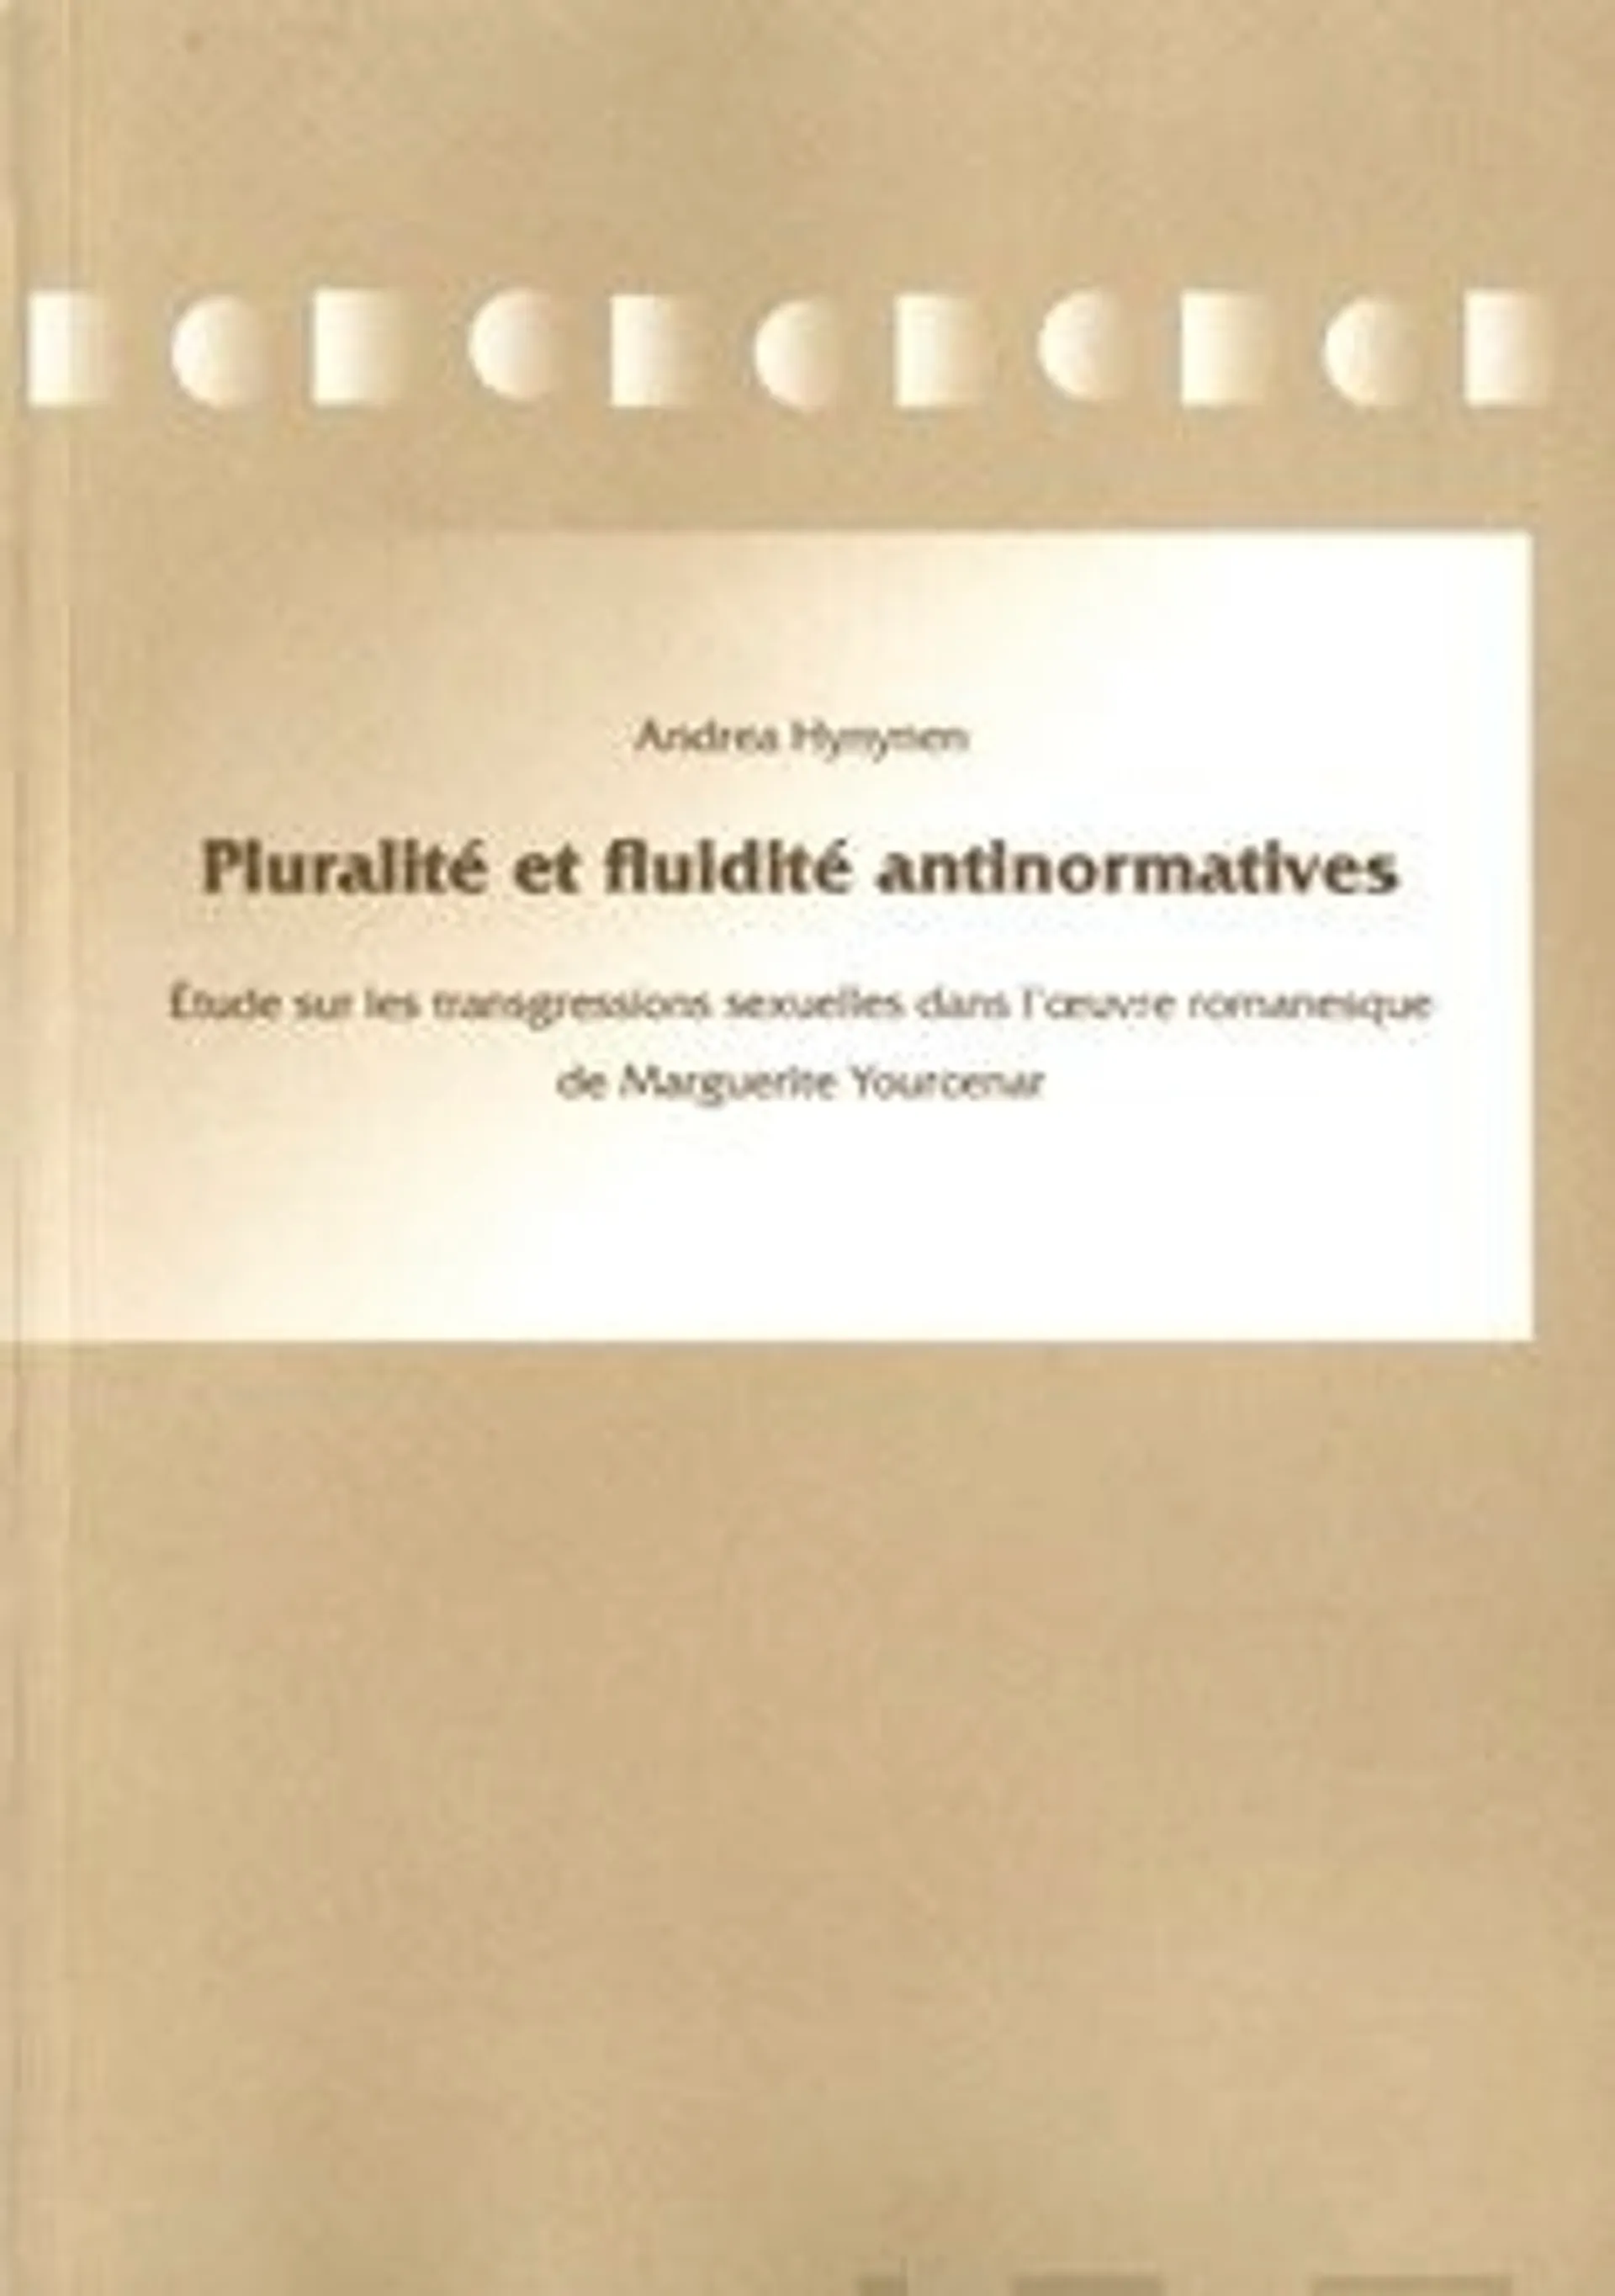 Hynynen, Pluralite et fluidite antinormatives